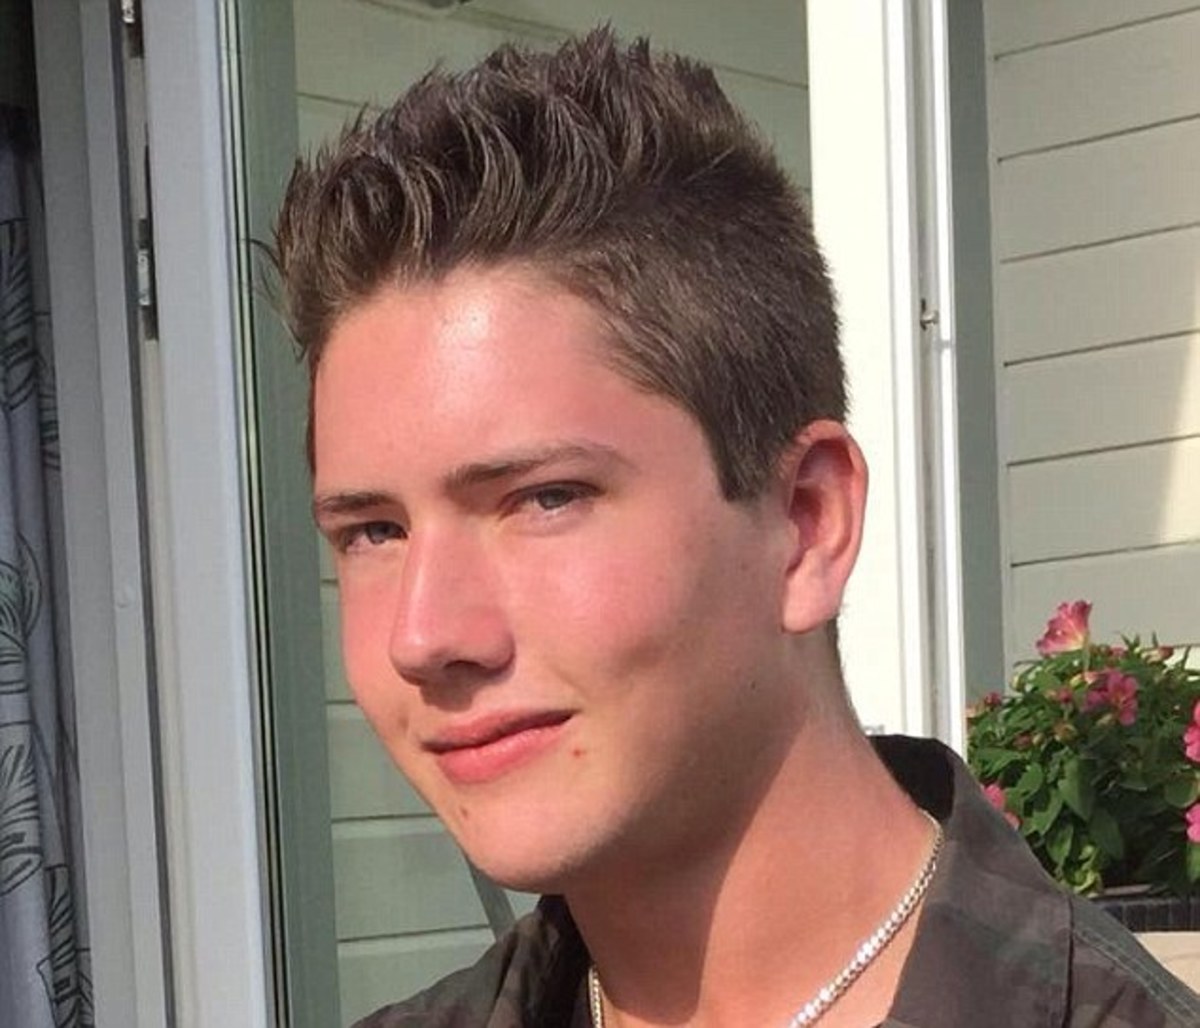 Ναζιστικά βίντεο έβλεπε ο 21χρονος λίγο πριν σκορπίσει τον θάνατο στη Σουηδία